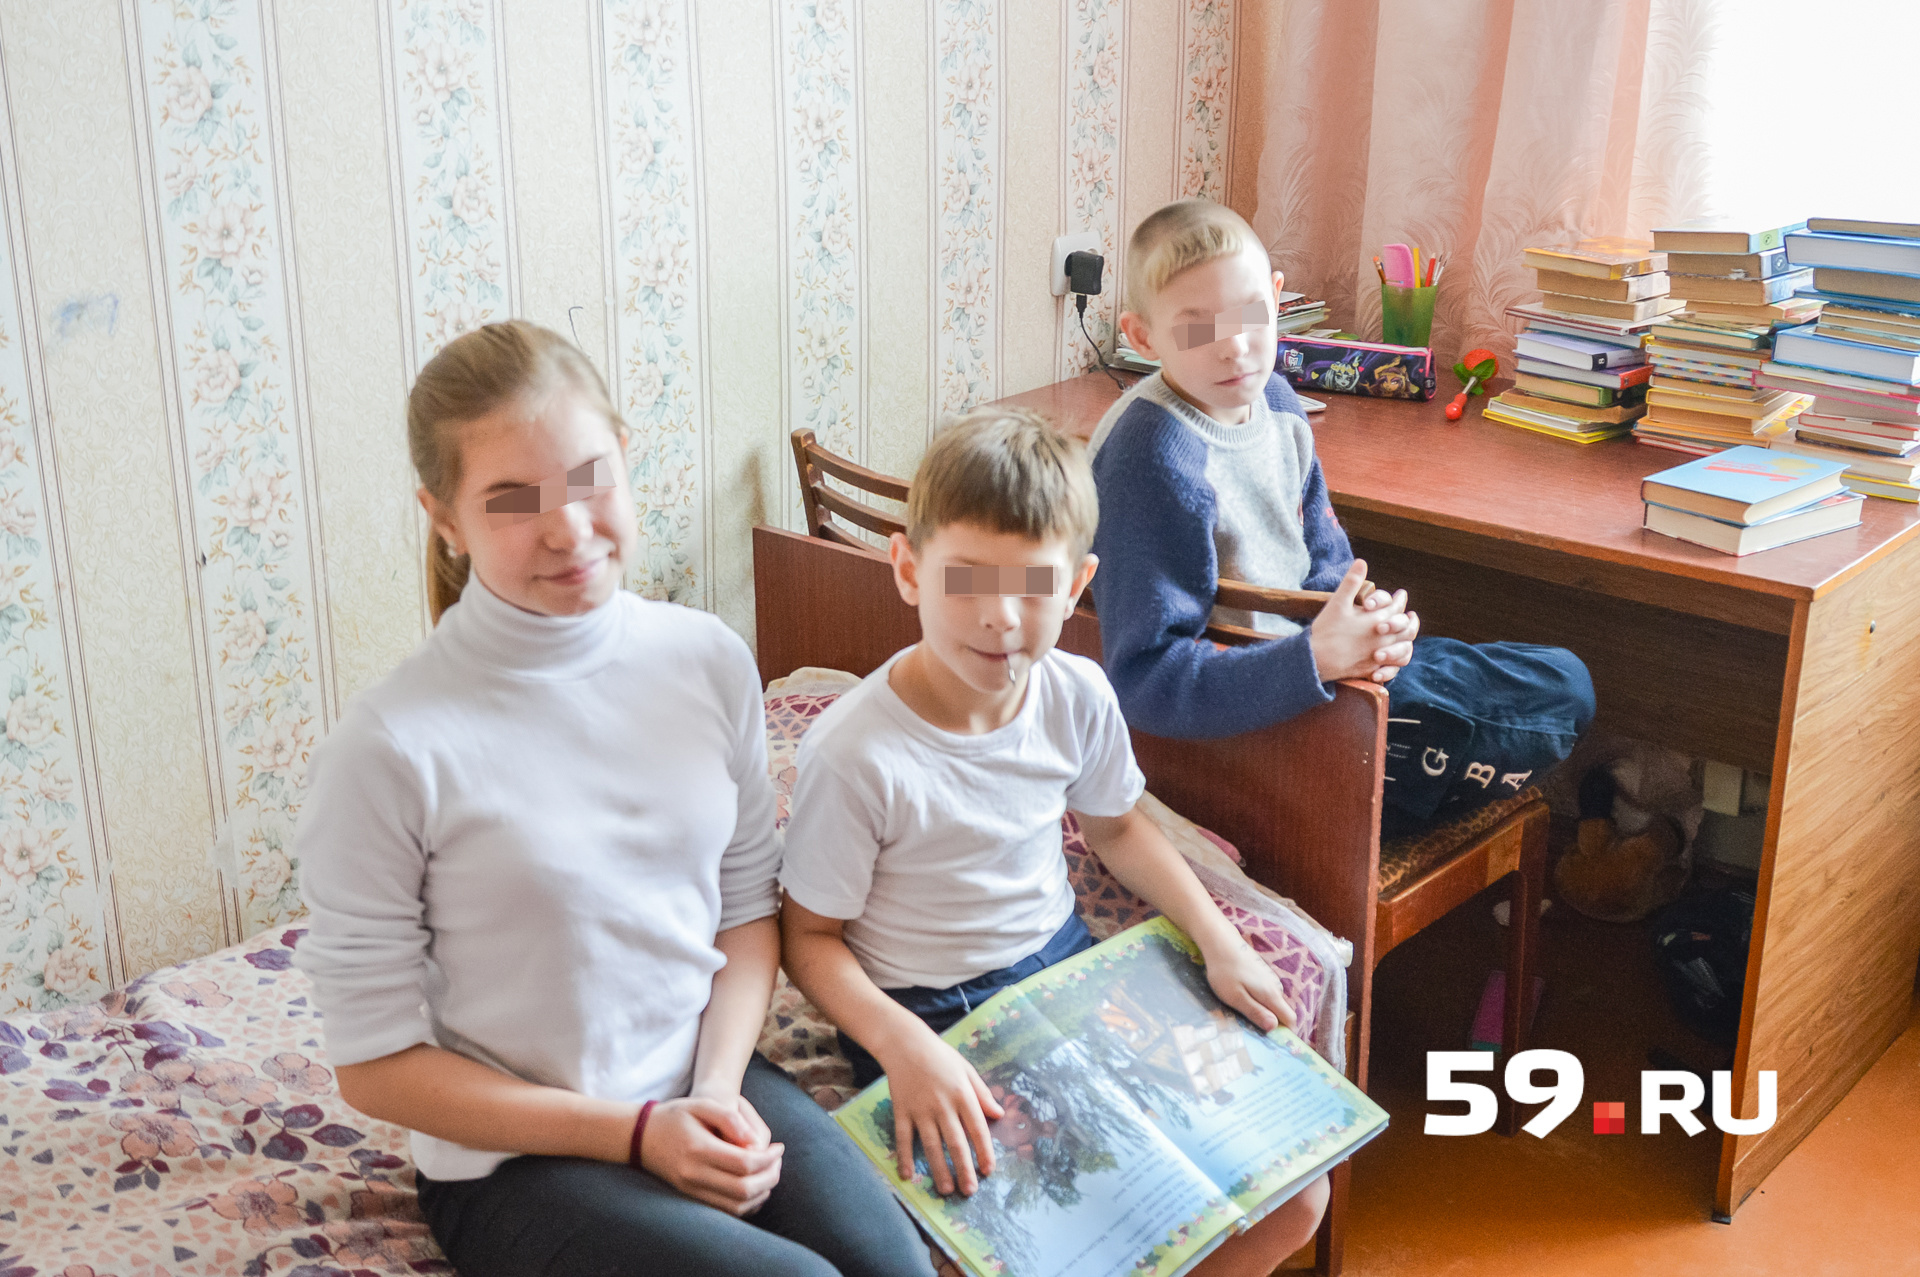 Семейно-воспитательная группа, в которой живут дети, расположена в обычной квартире